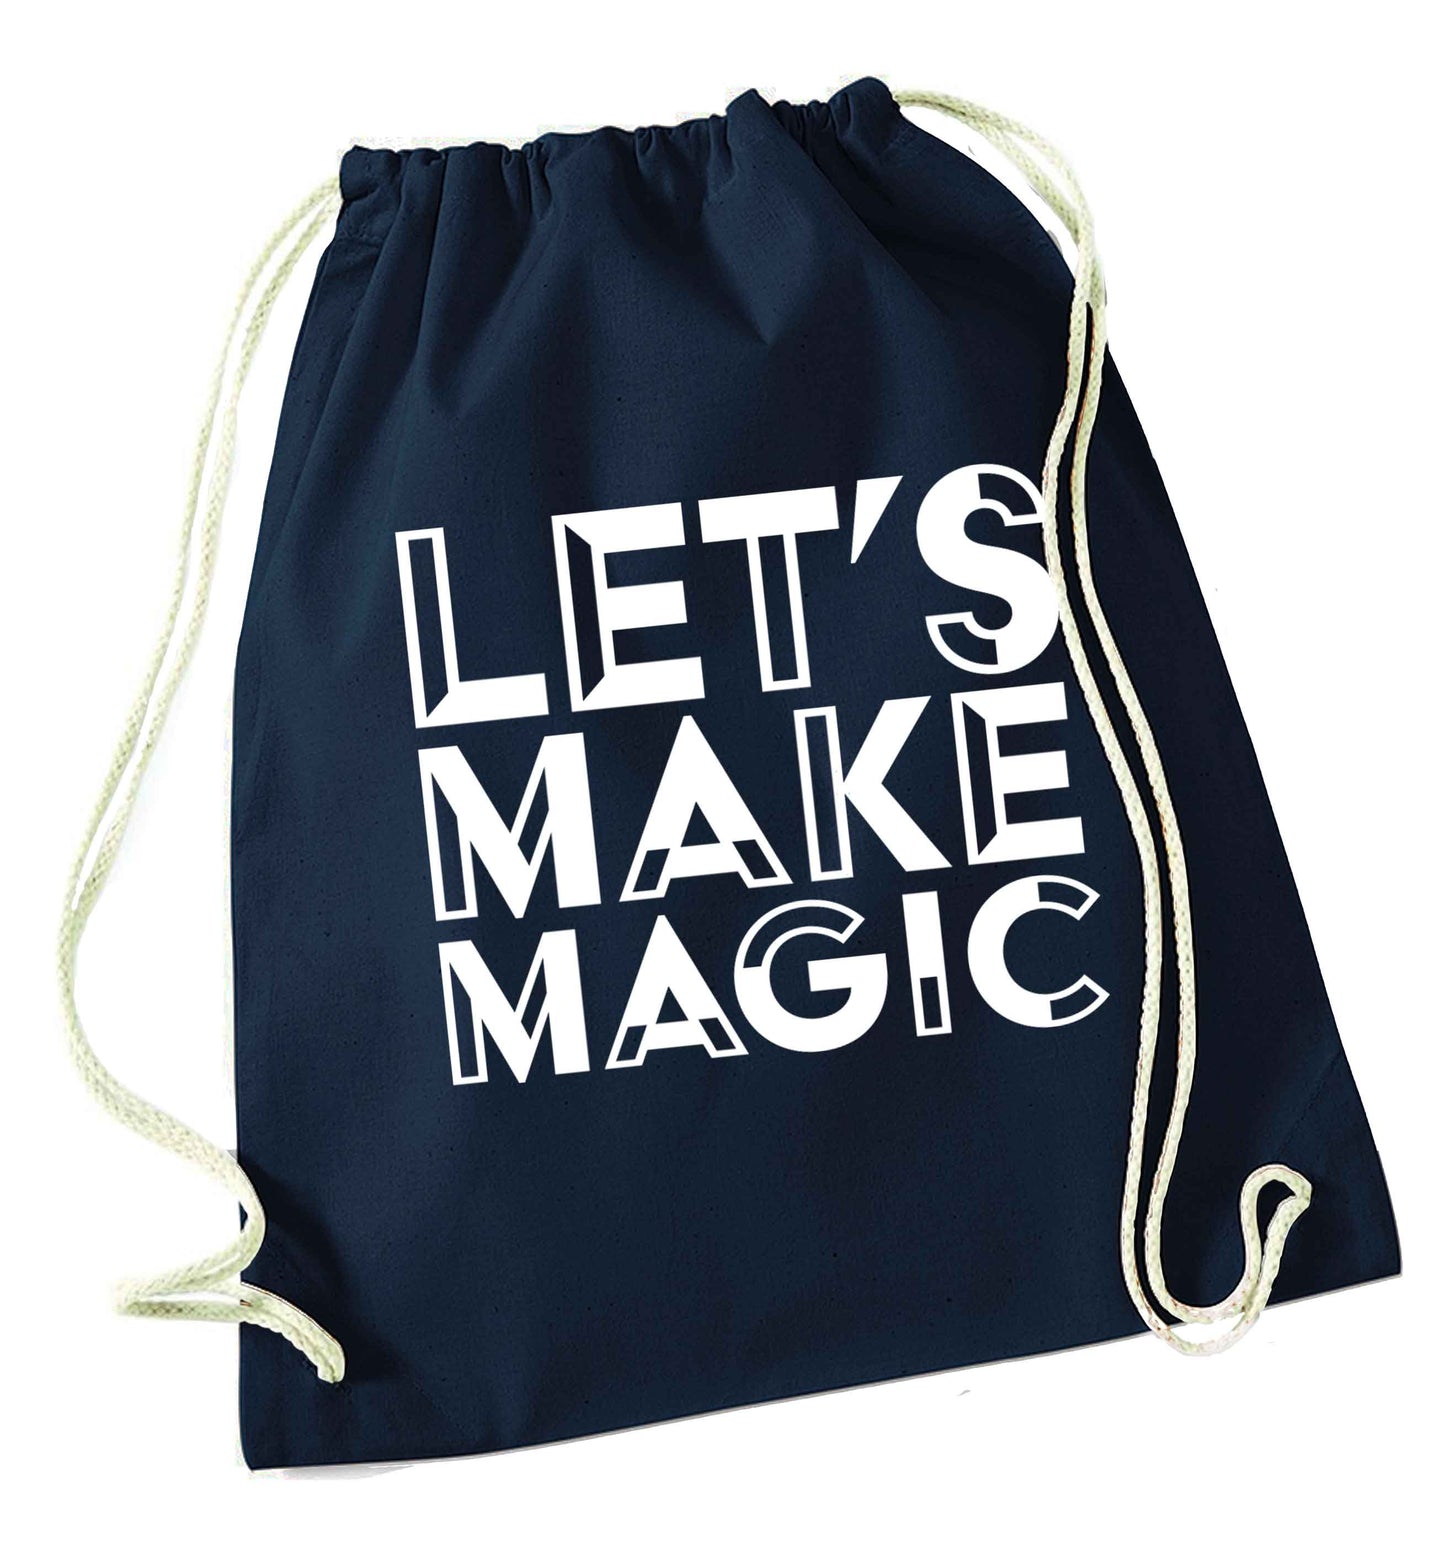 Let's make magic navy drawstring bag